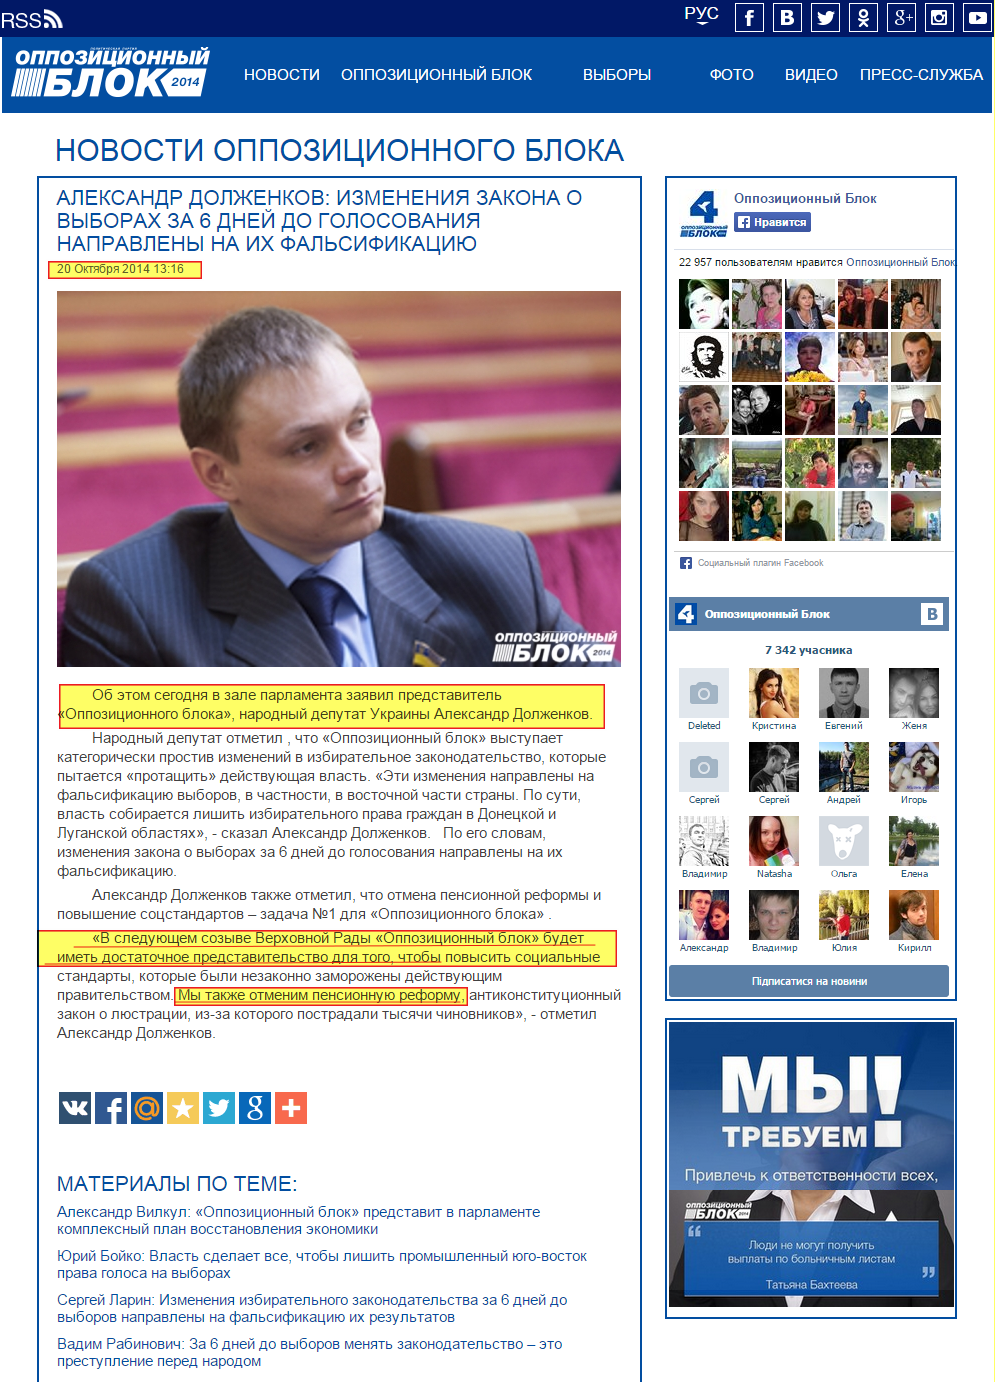 http://opposition.org.ua/news/aleksandr-dolzhenkov-izmeneniya-zakona-o-vyborakh-za-6-dnej-do-golosovaniya-napravleny-na-ikh-falsifikaciyu.html